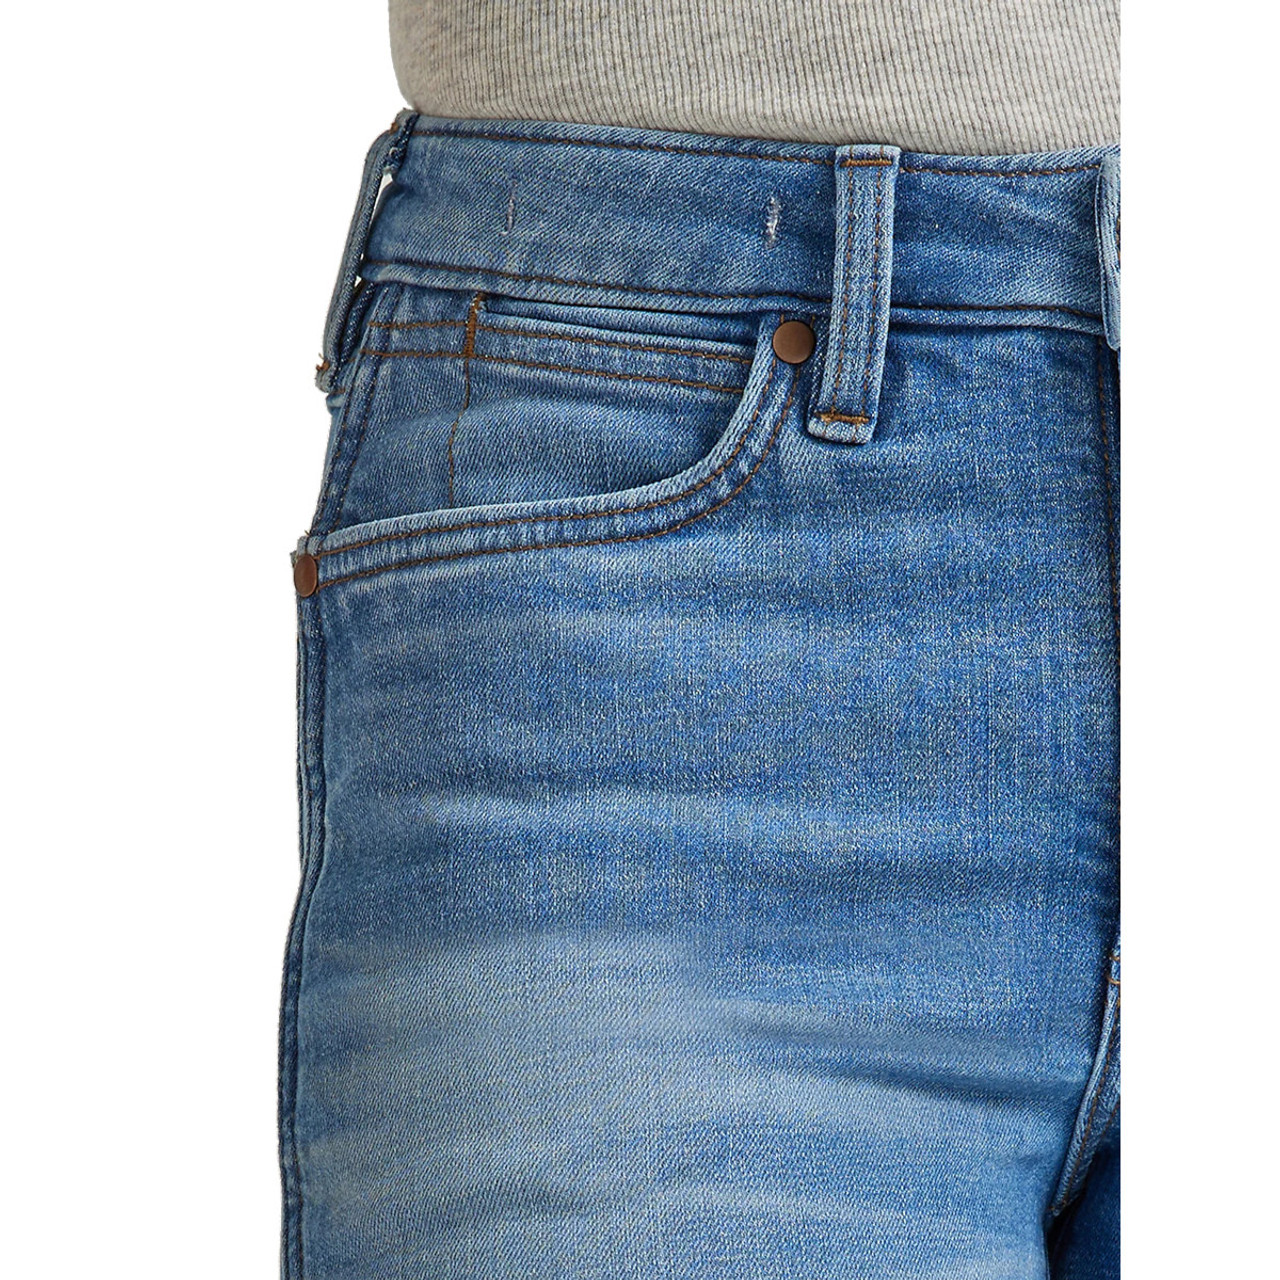 Women's Wrangler Retro® Premium High Rise Trouser Jean, Women's JEANS, Wrangler®